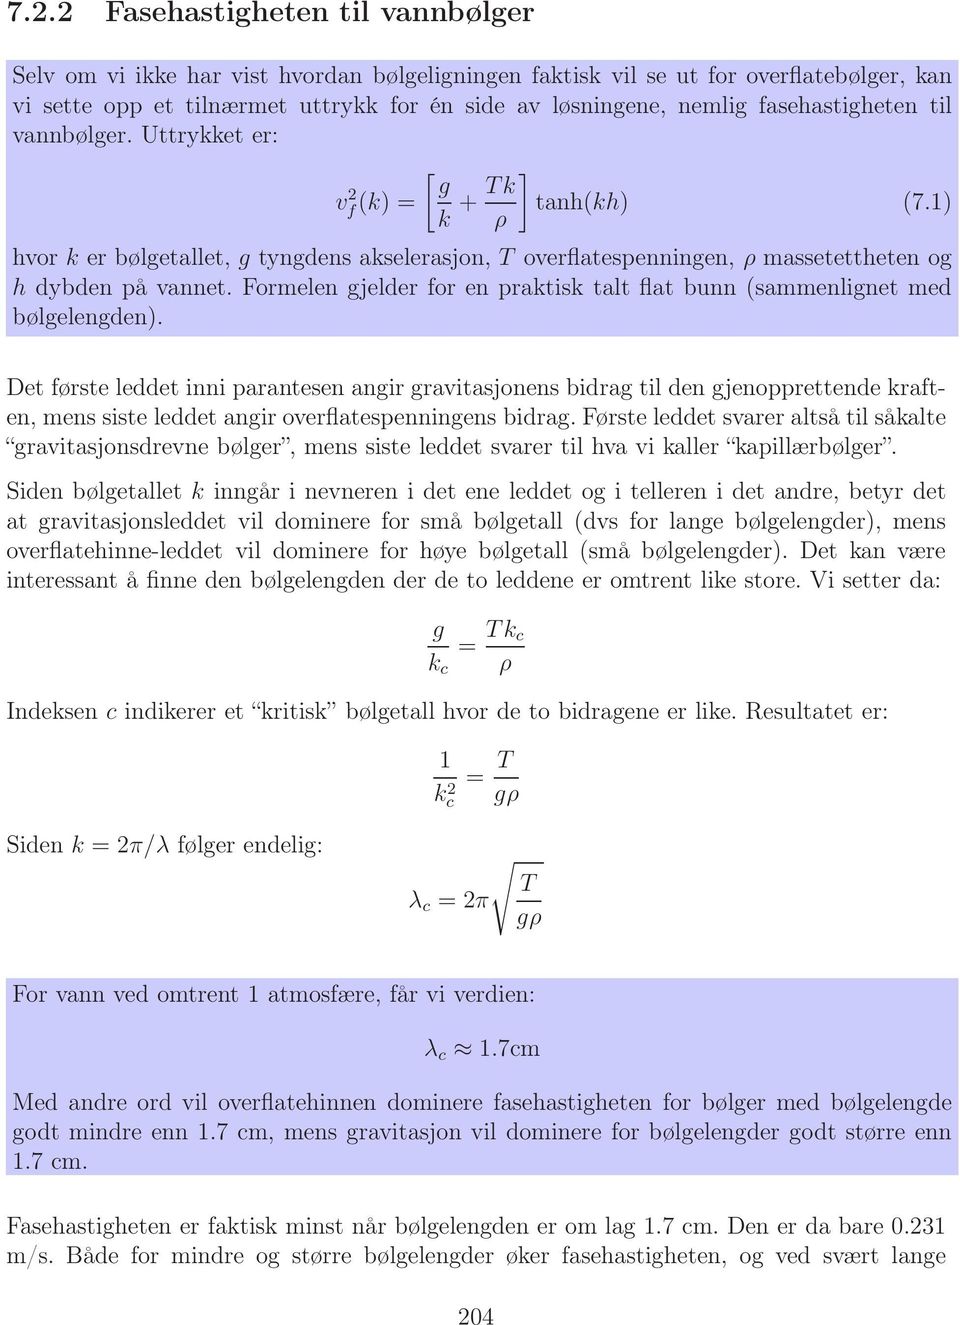 Formelen gjelder for en praktisk talt flat bunn (sammenlignet med bølgelengden).